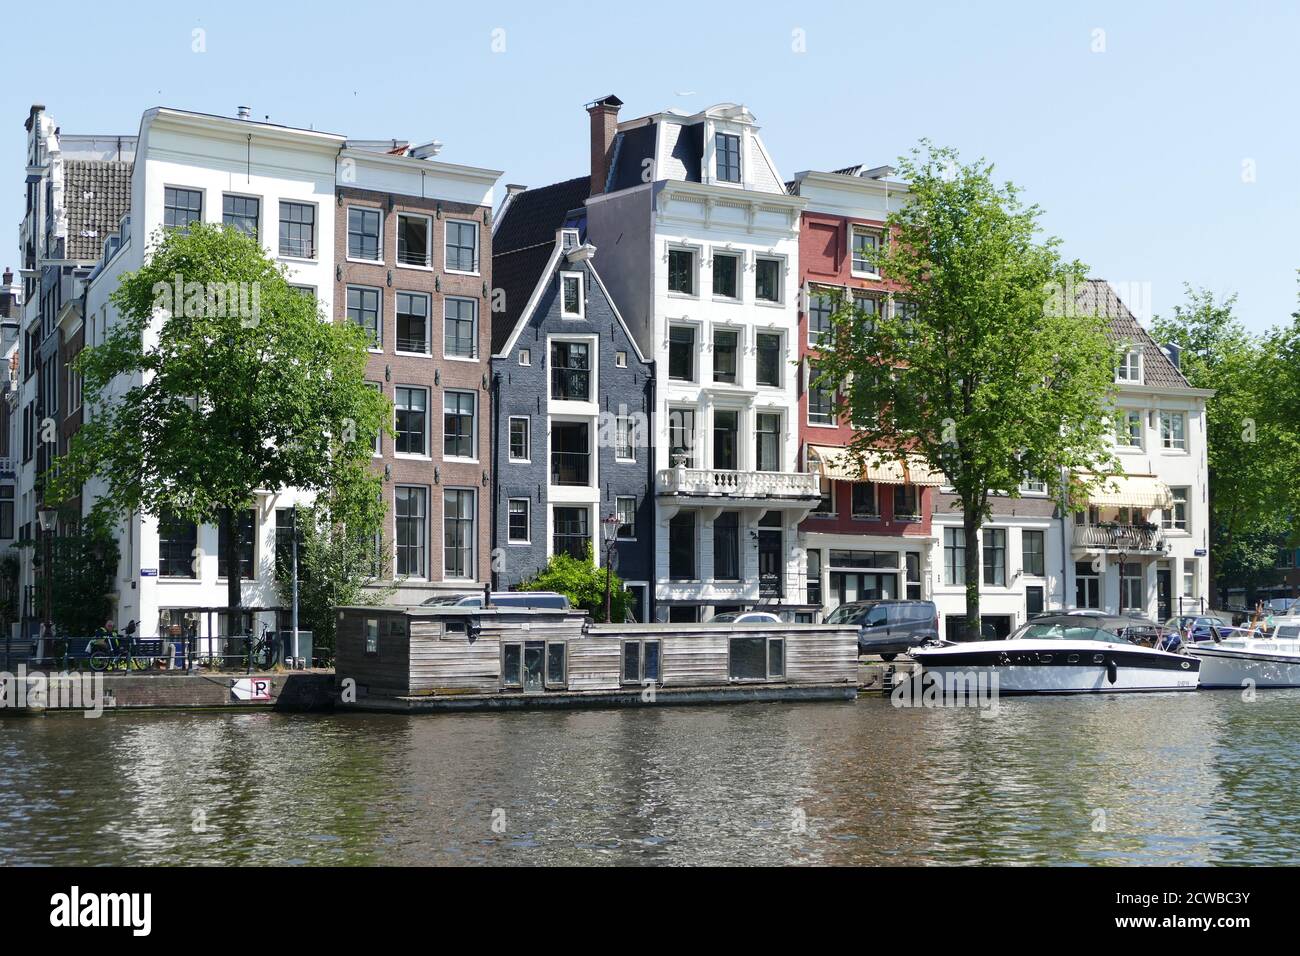 Los canales de Amsterdam, Holanda, se utilizan para transportar personas, turistas y suministros. Foto de stock